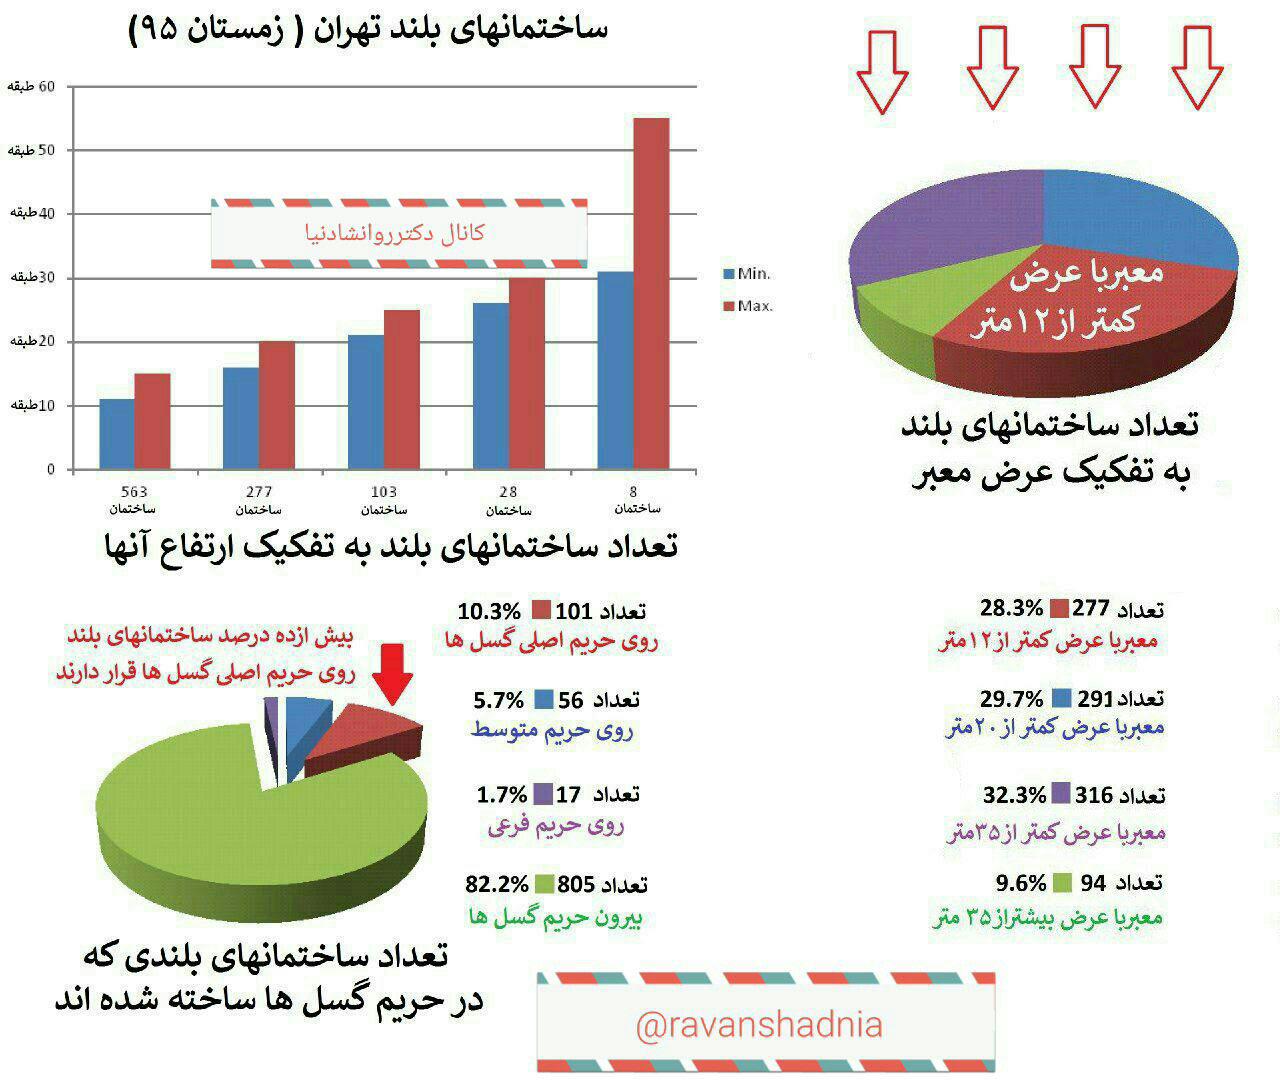  تحلیل نموداری اخرین آمار توزیع بلند مرتبه های تهران